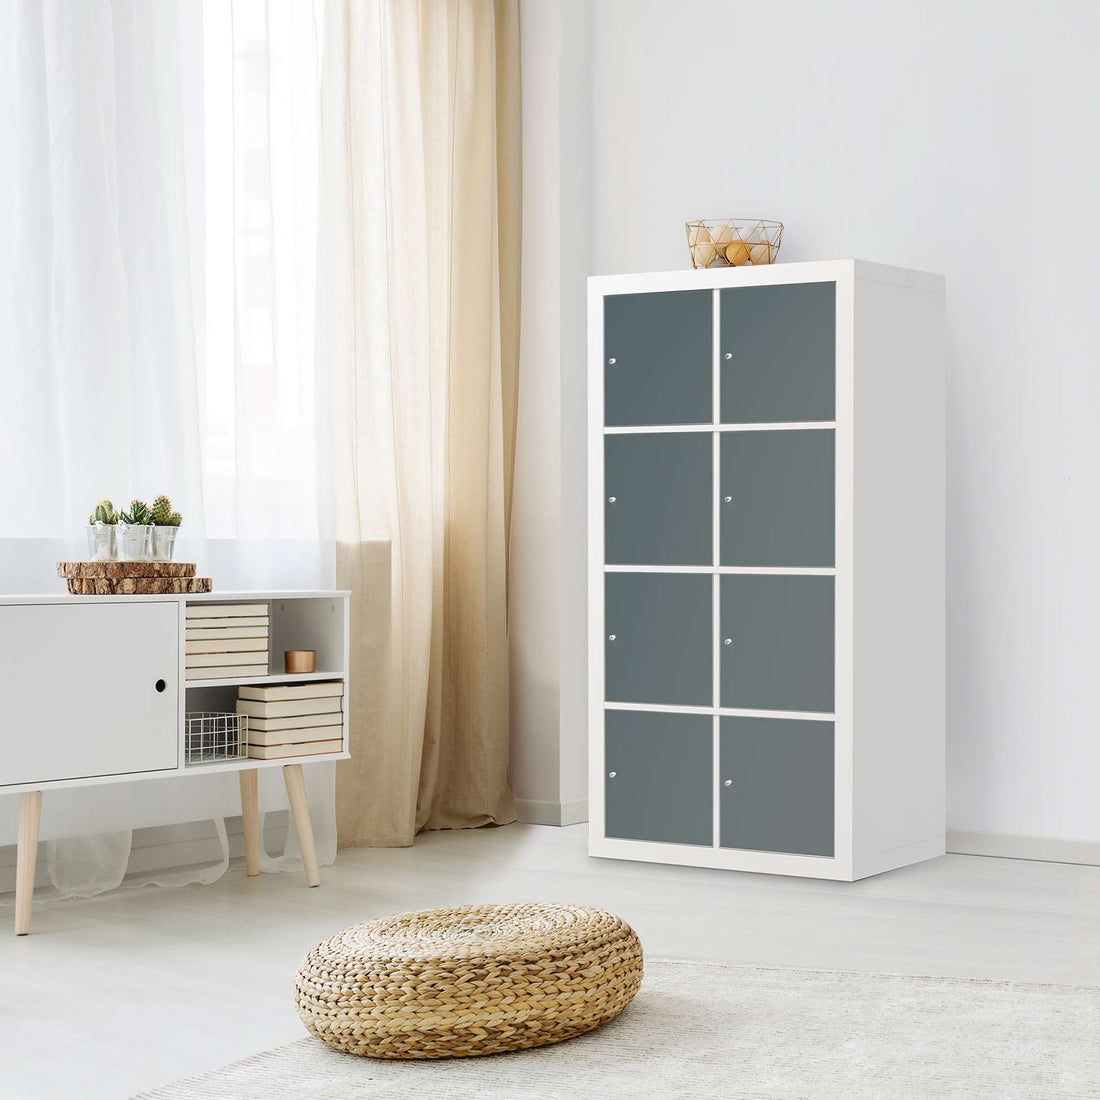 Folie für Möbel Blaugrau Light - IKEA Kallax Regal 8 Türen - Wohnzimmer